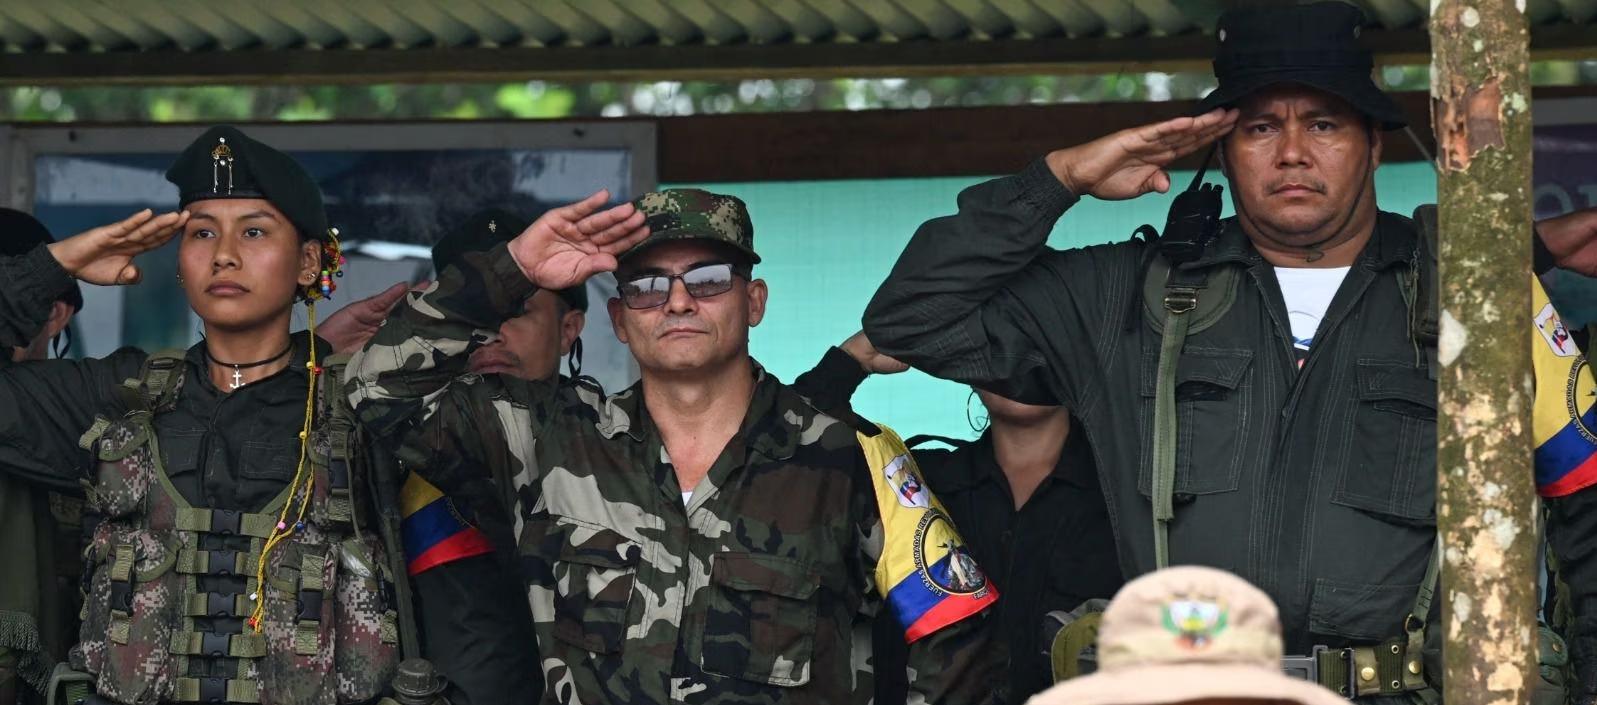 Cese el fuego con disidencias de las FARC